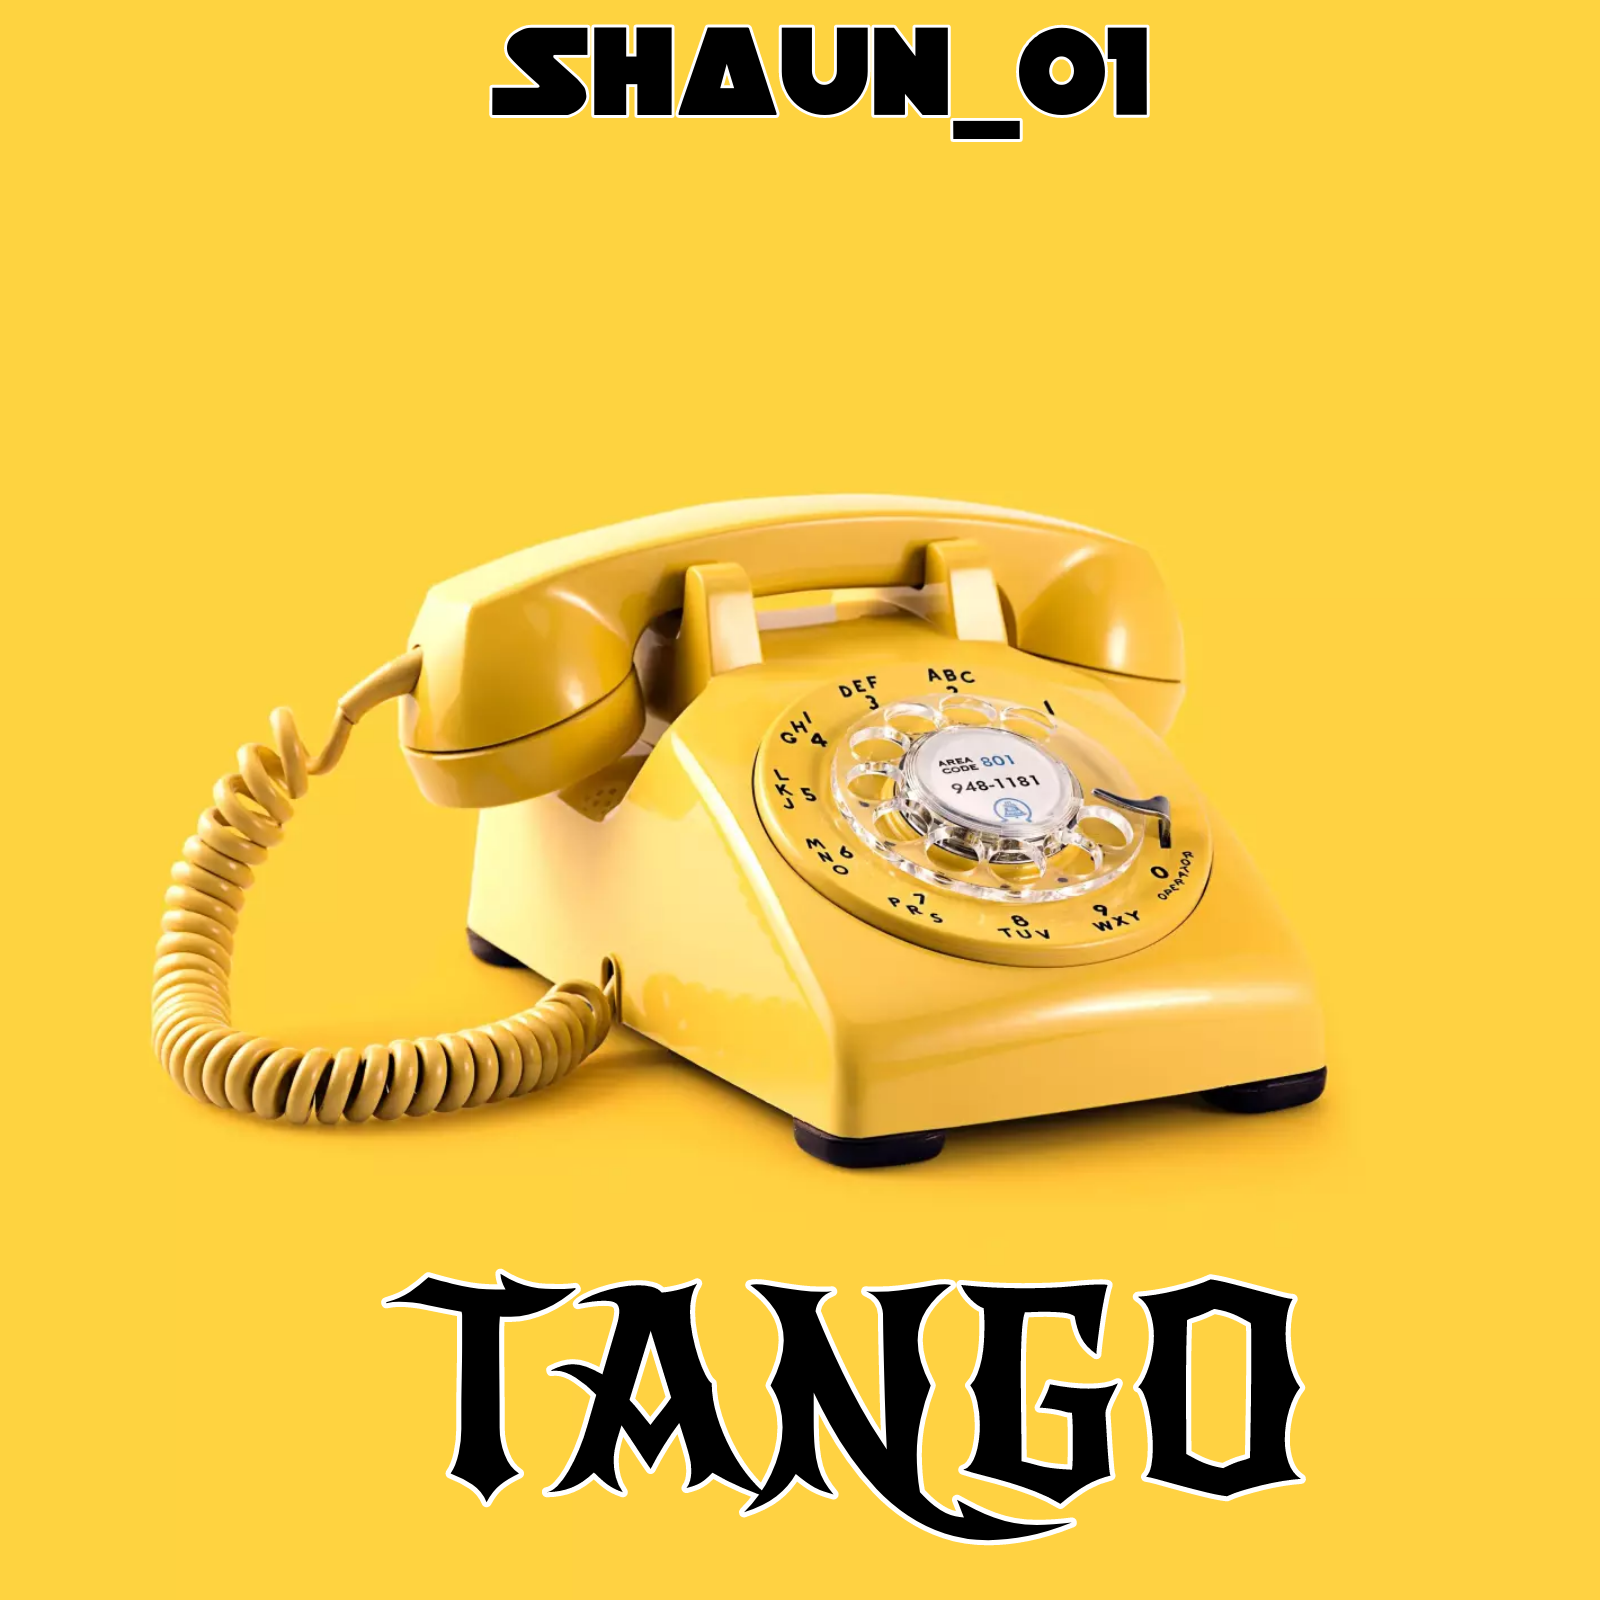 tango - shaun_O1